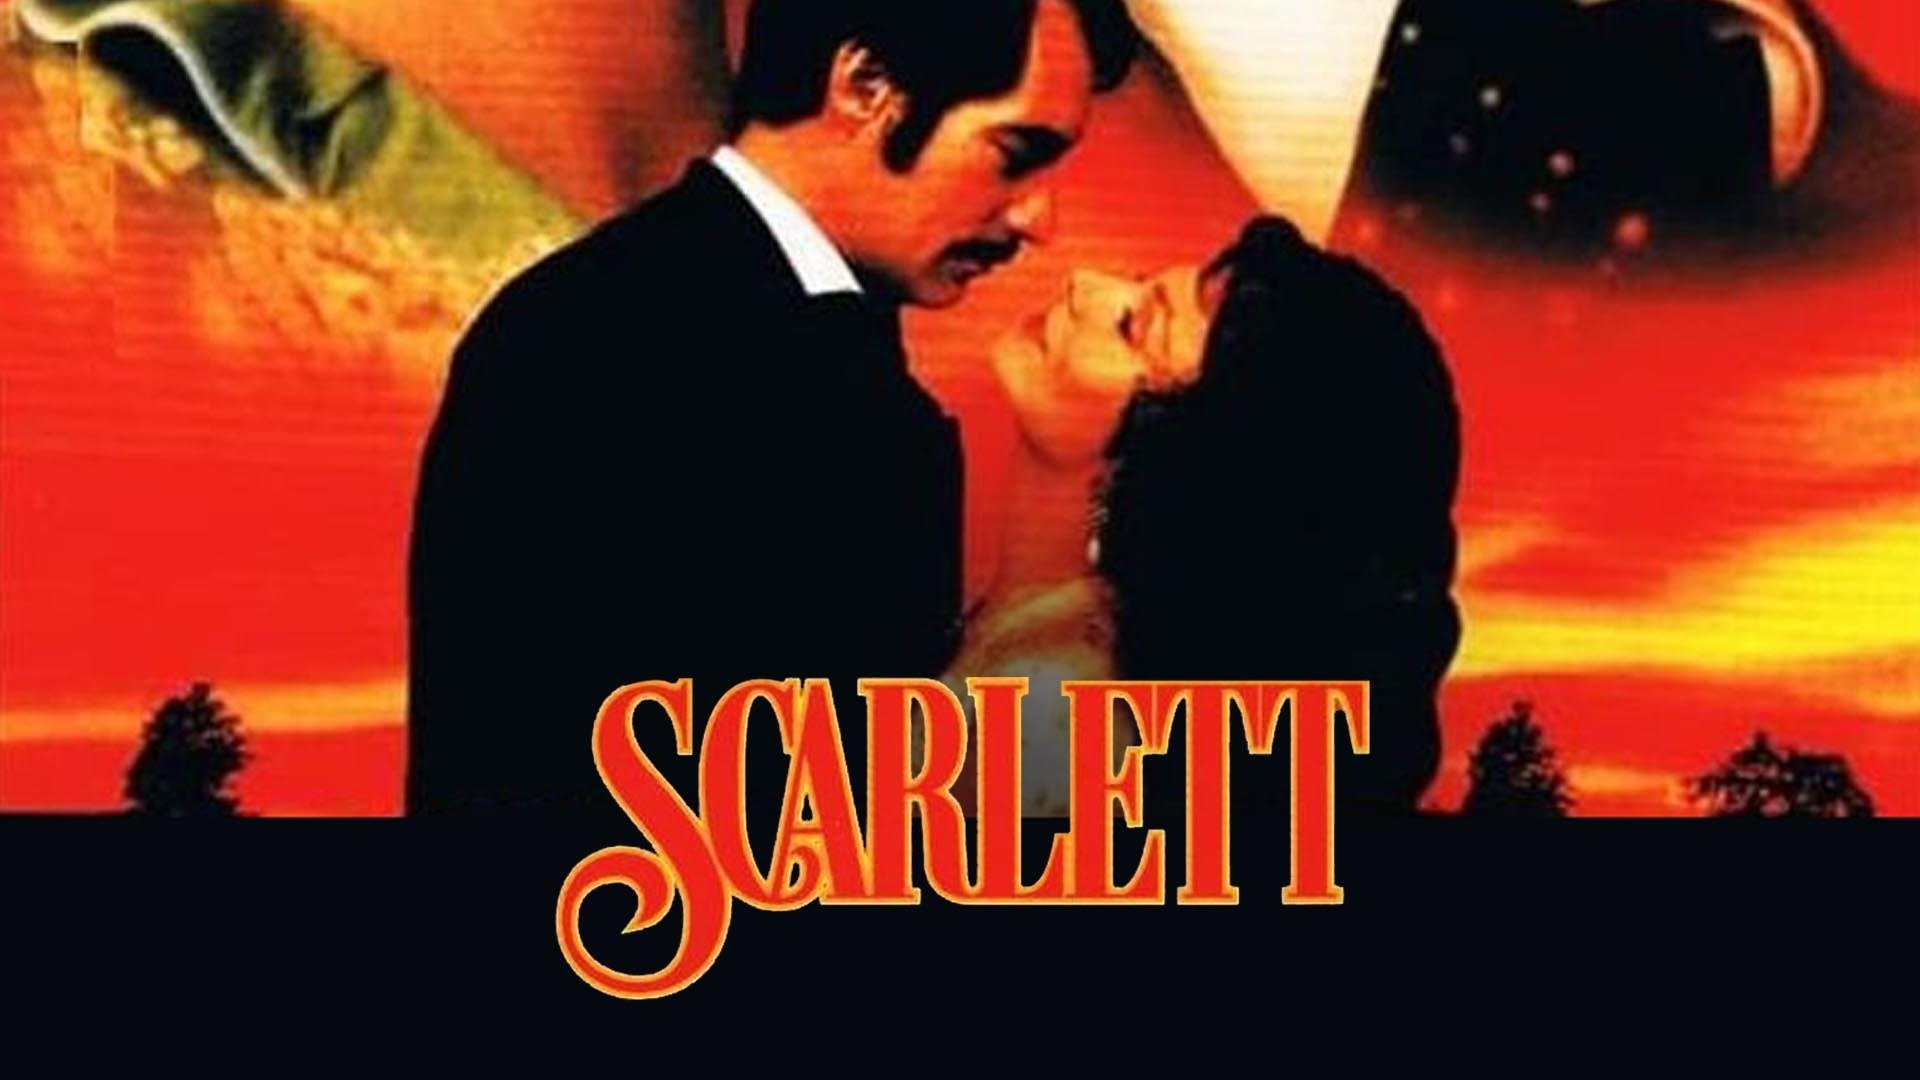 Scarlett (TV Mini Series 1994) - IMDb